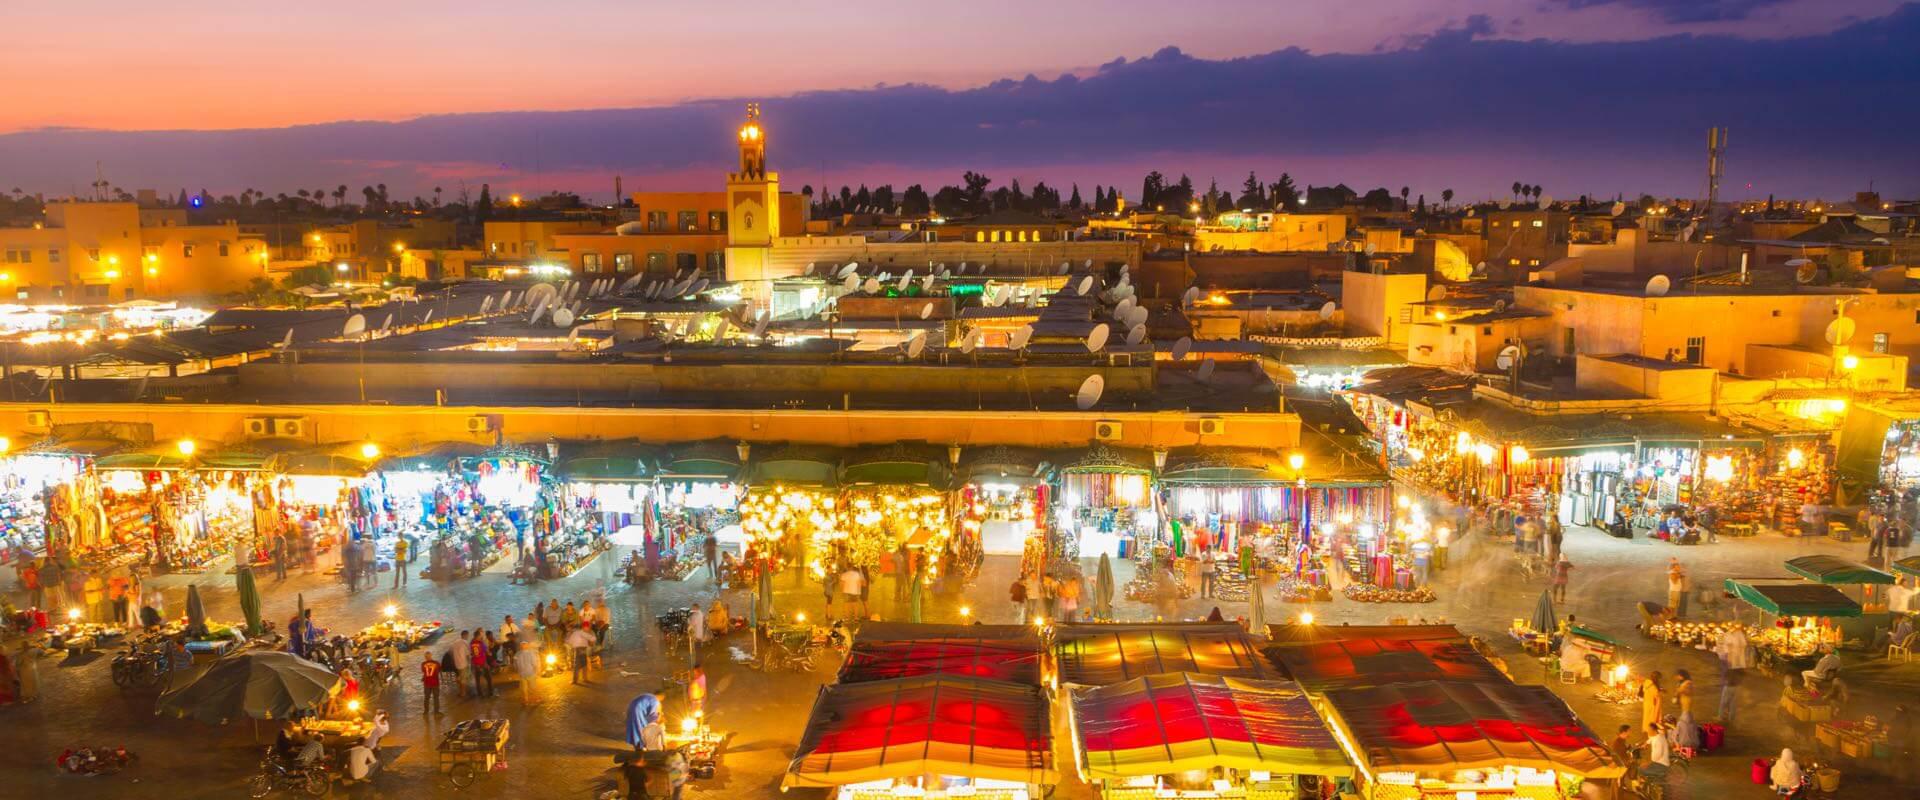 5-motivos-para-visitar-marrakech